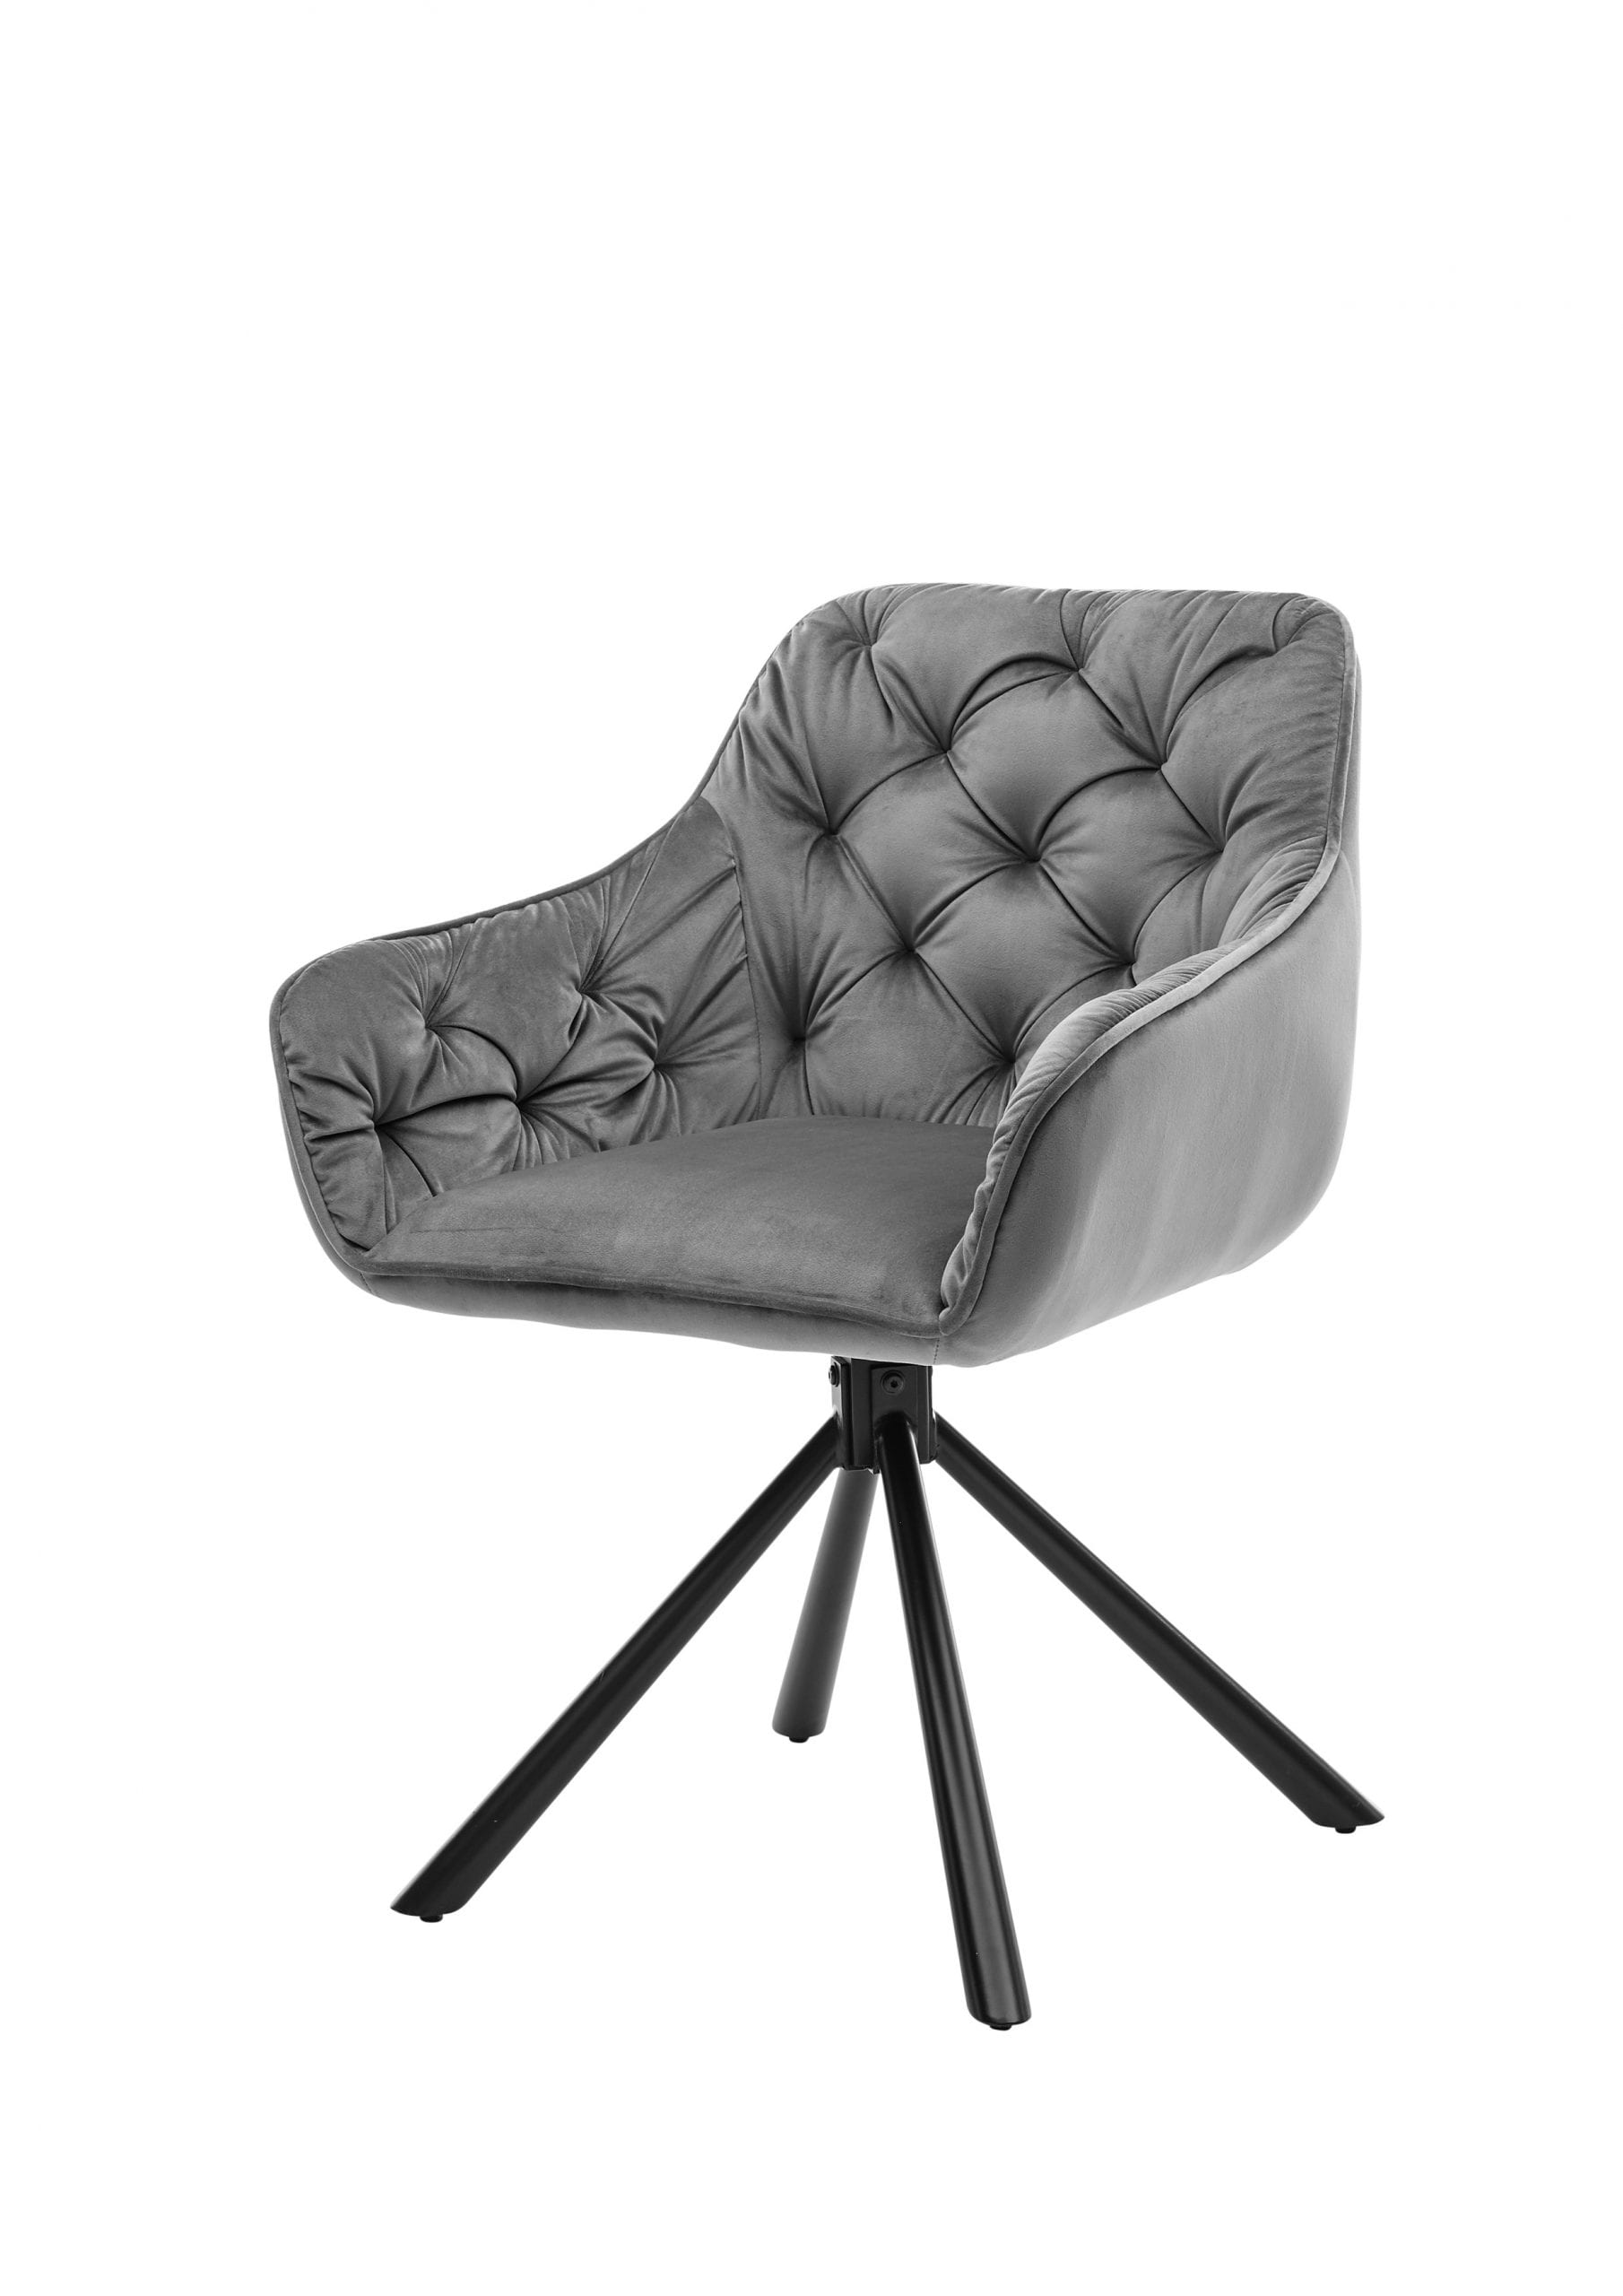 4er-Set Esszimmer Stühle / and Möbis Armlehnstuhl auf in « inkl.Chesterfield-Steppung mit grau drehbar Rücken Lehnen und inkl. Samtbezug More Rückholfunktion innen,180°